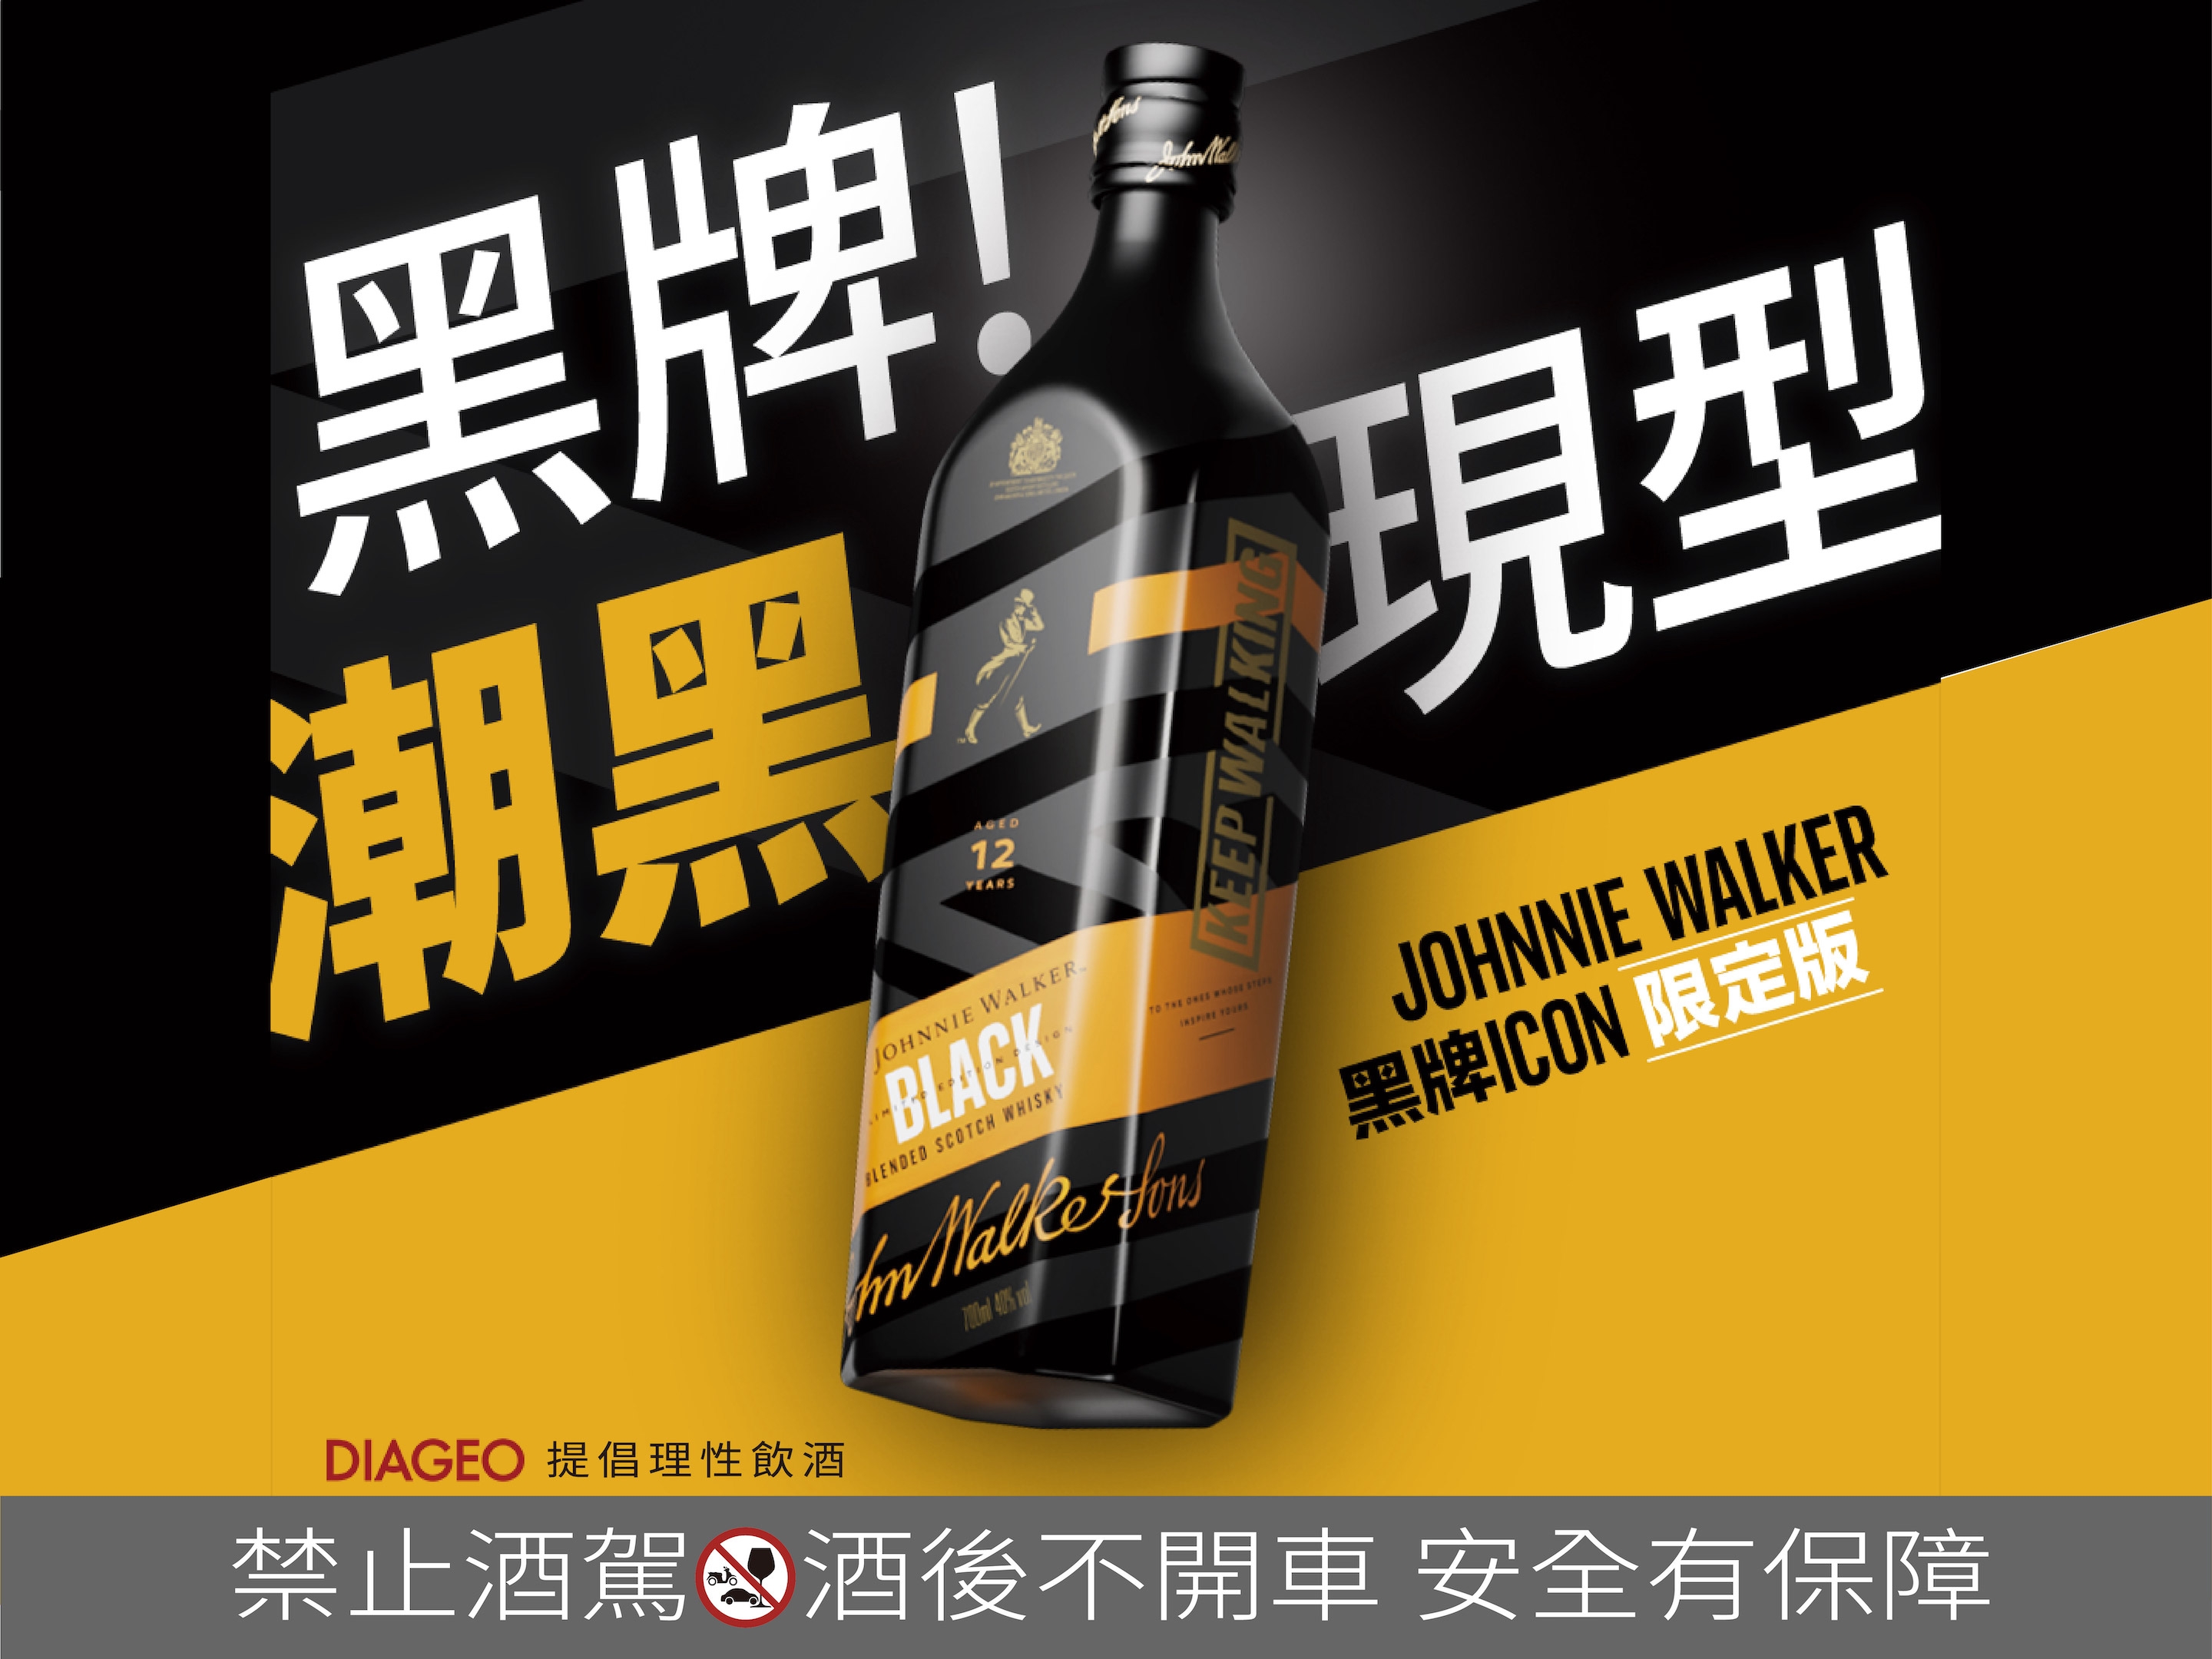 「經典黑牌，潮黑現型！」JOHNNIE WALKER 推出黃黑撞色黑牌ICON限定版包裝： Morris、孫沁岳也為之瘋狂的時下最夯收藏？！打破你對威士忌的想像！